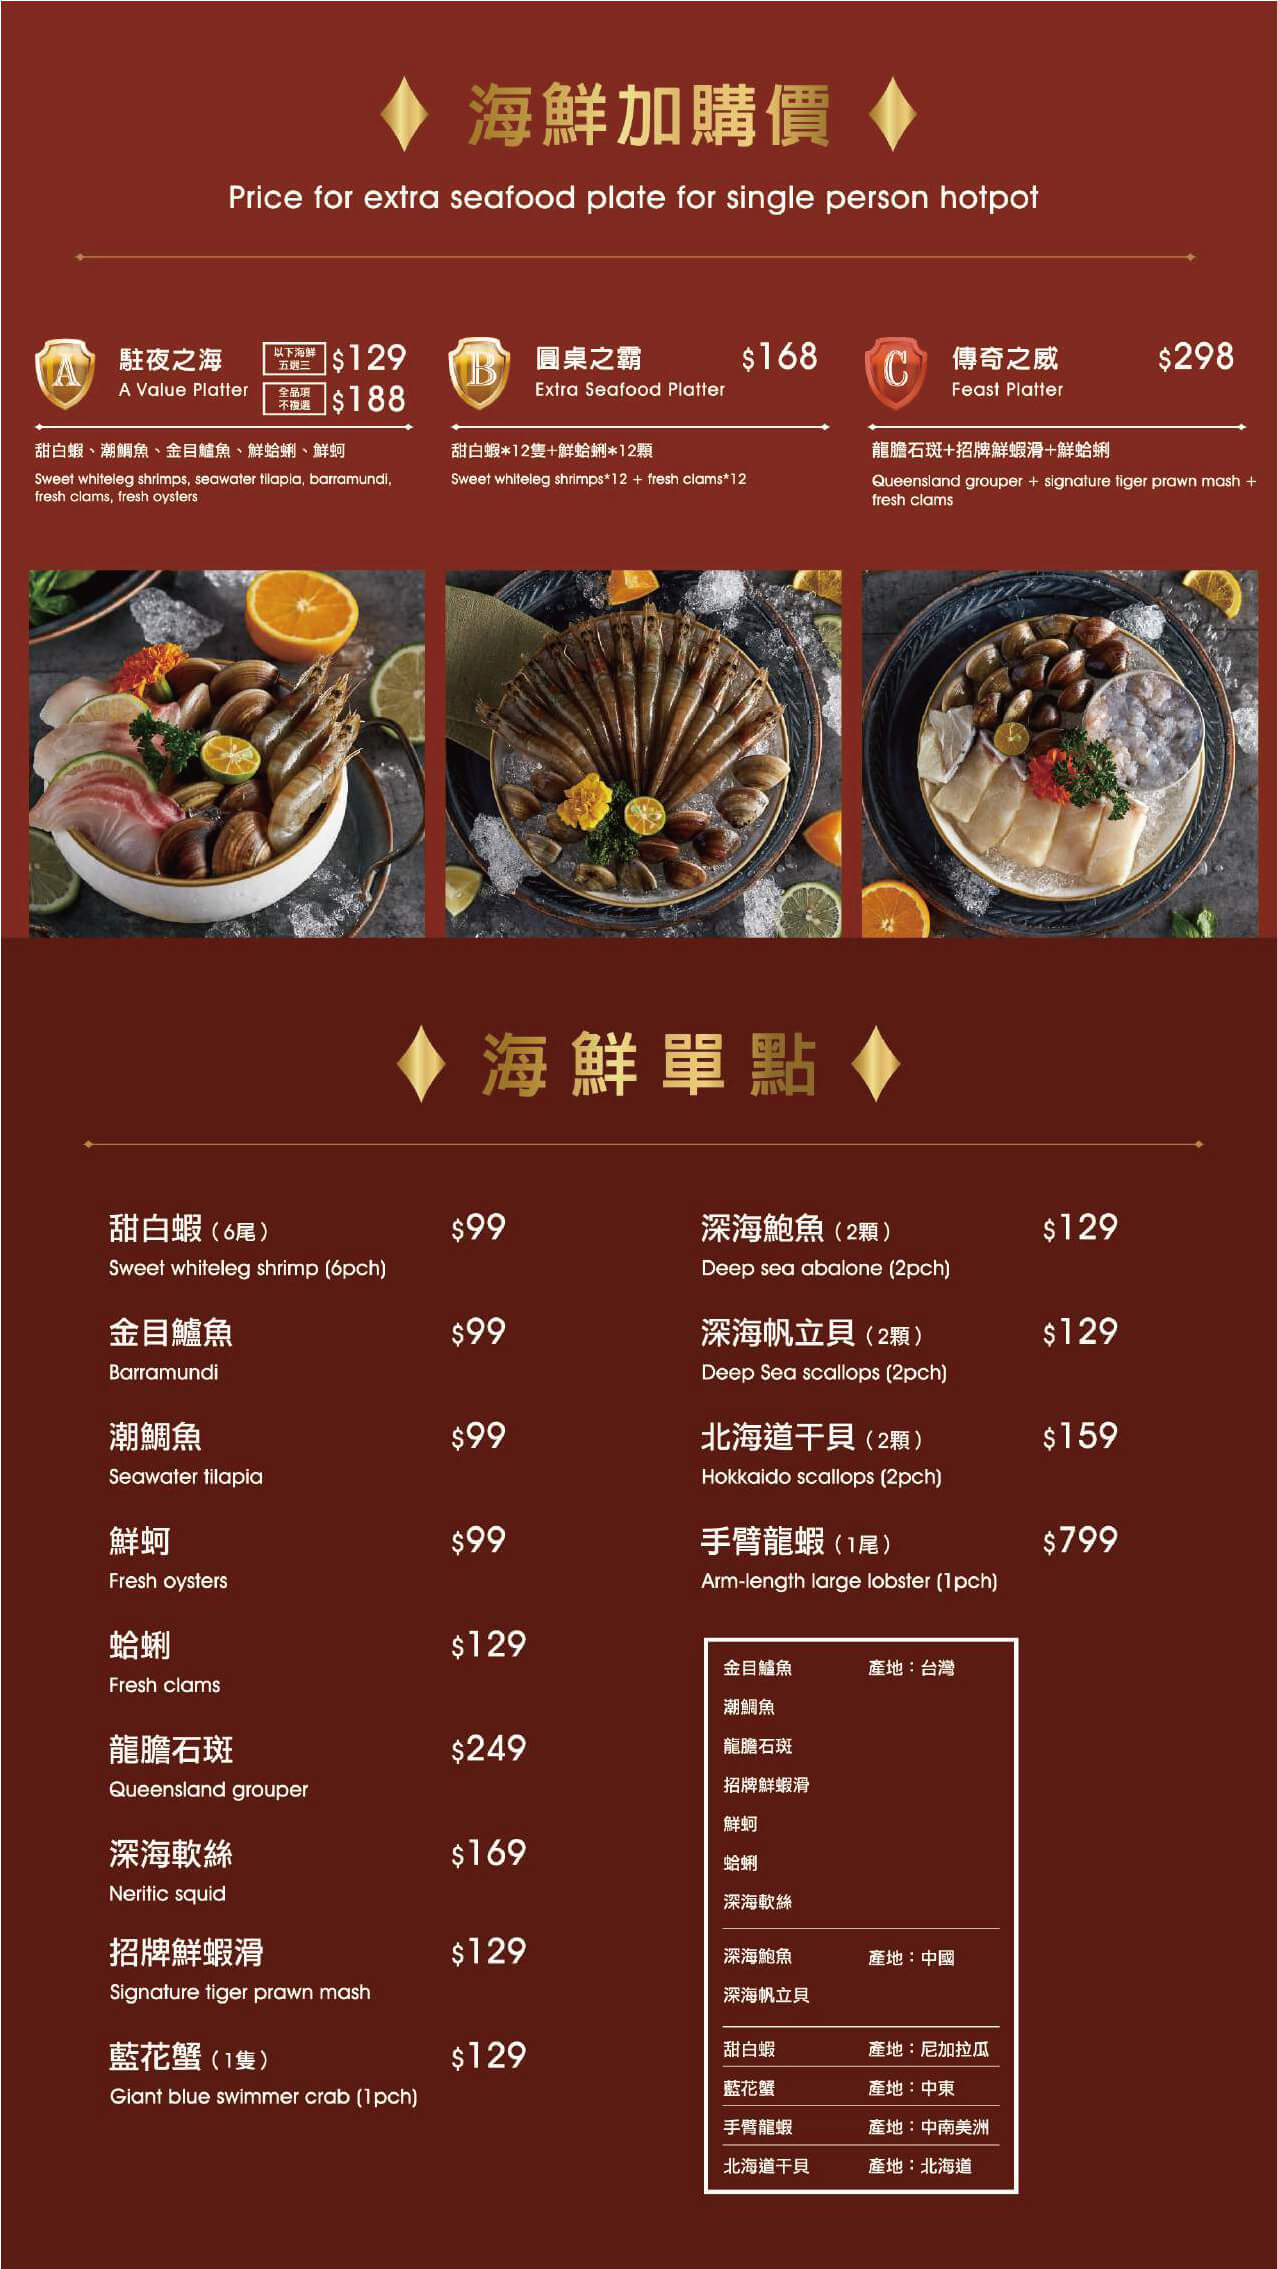 嗑肉石鍋二代店菜單海鮮單點與海鮮加價購的項目